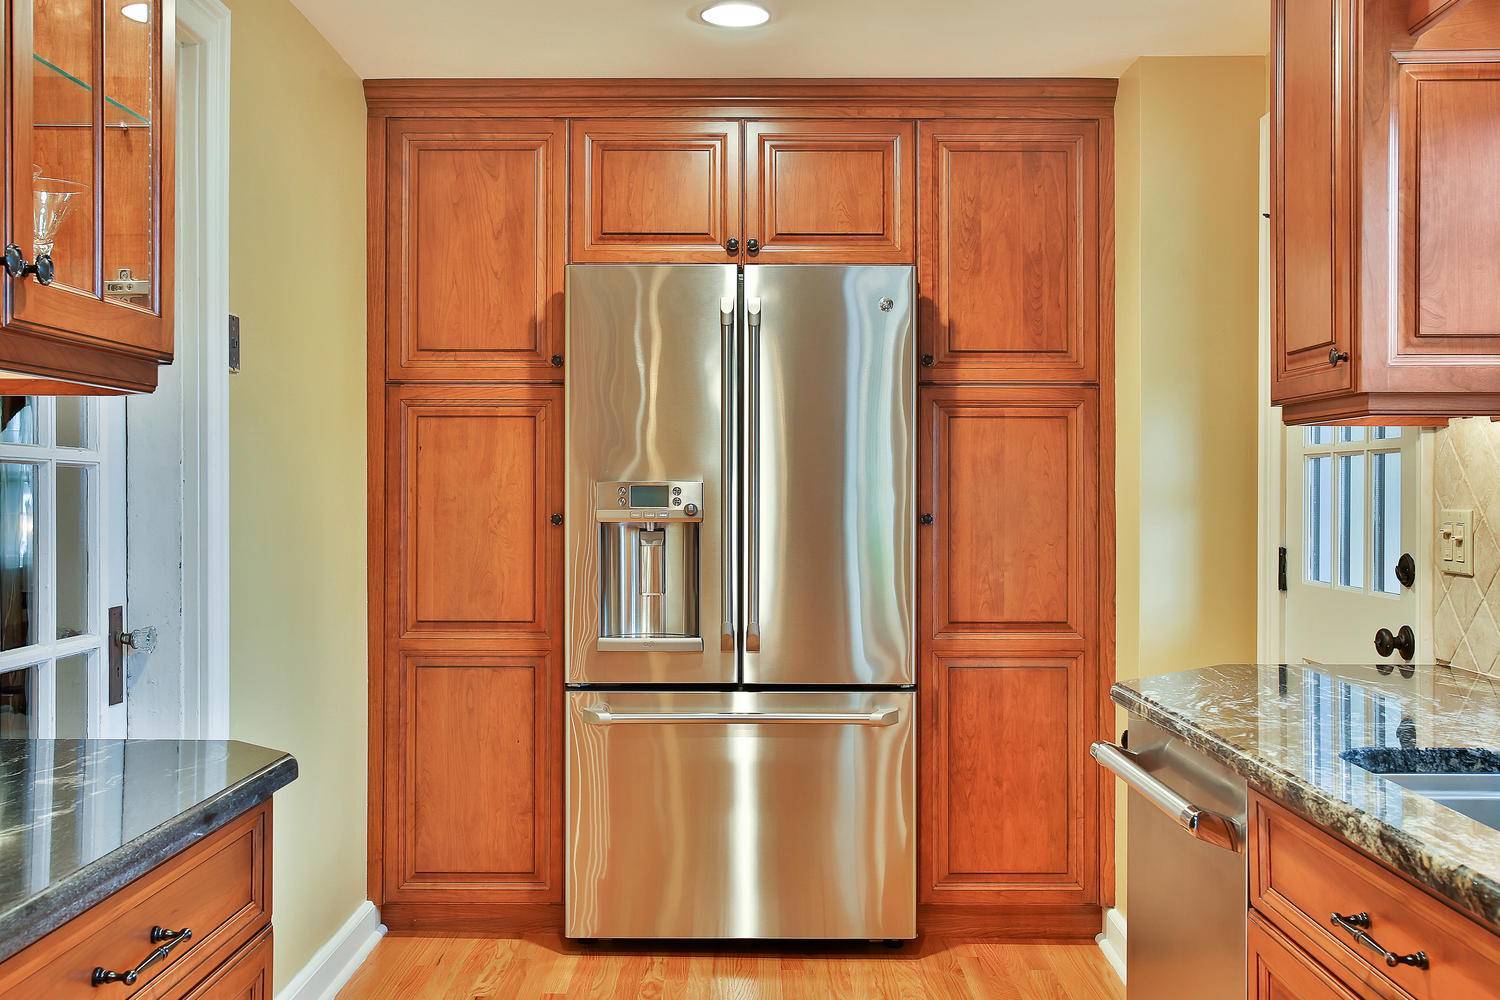 Хотите встроить обычный холодильник в шкаф? узнайте, почему нельзя